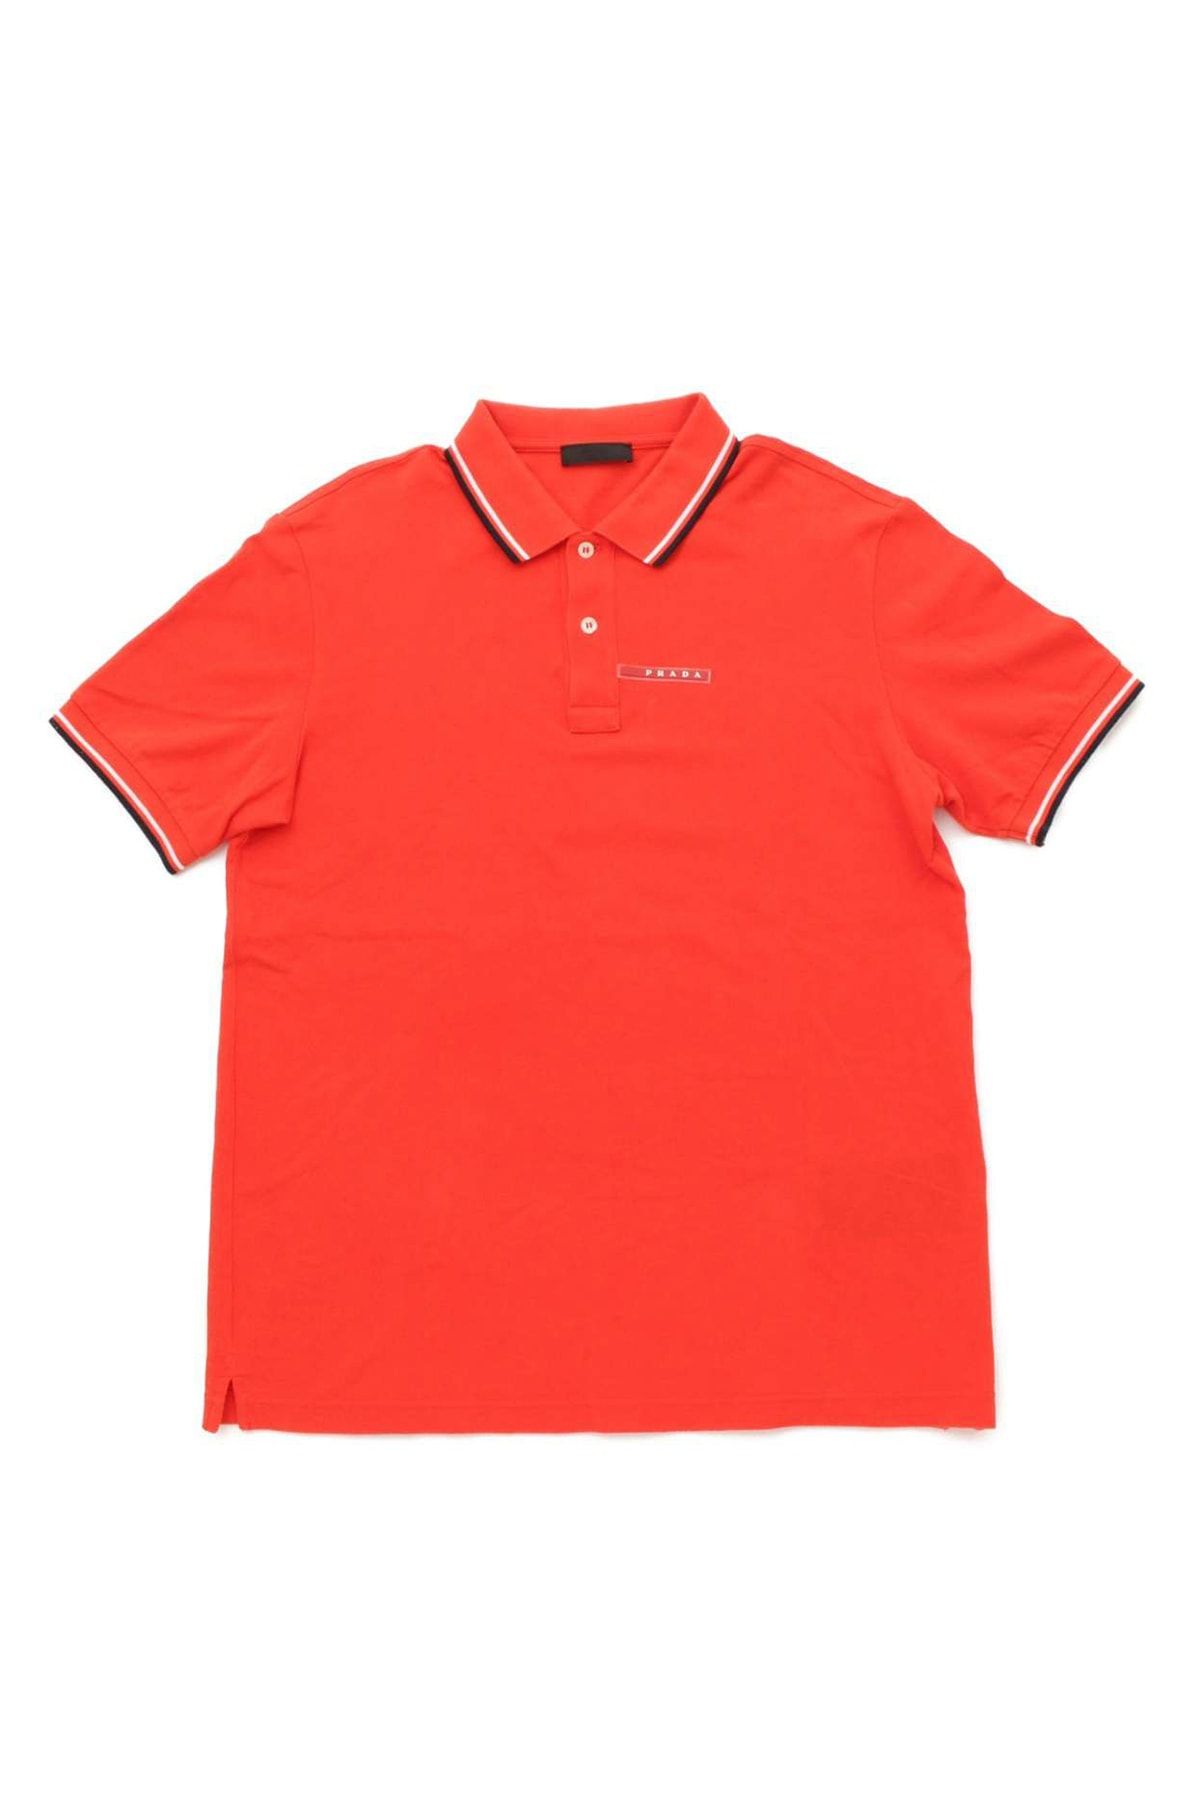 Prada Erkek Turuncu T-Shirt Sjn256-F0011